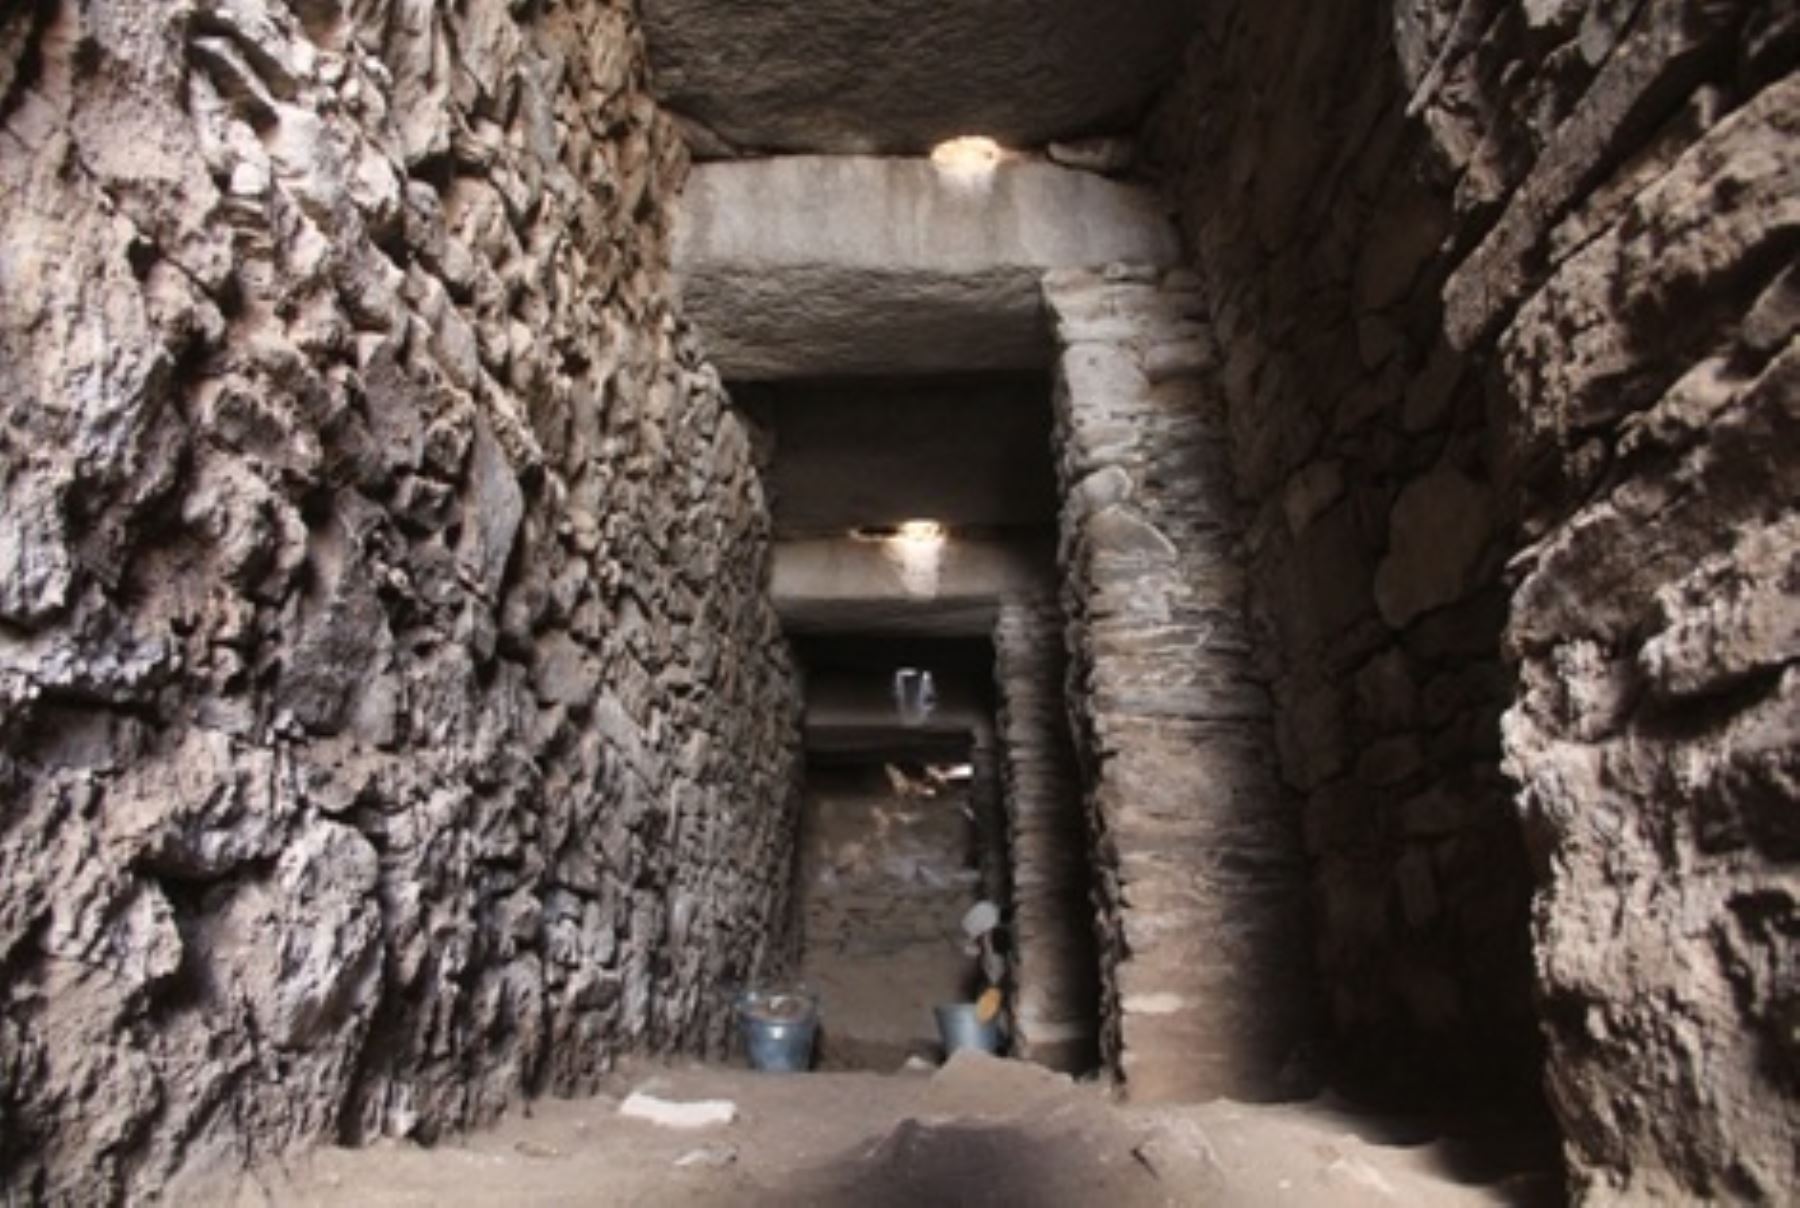 Importantes conjuntos arquitectónicos fueron descubiertos en el complejo arqueológico Wari, ubicado en la provincia de Huamanga, región Ayacucho. Difusión